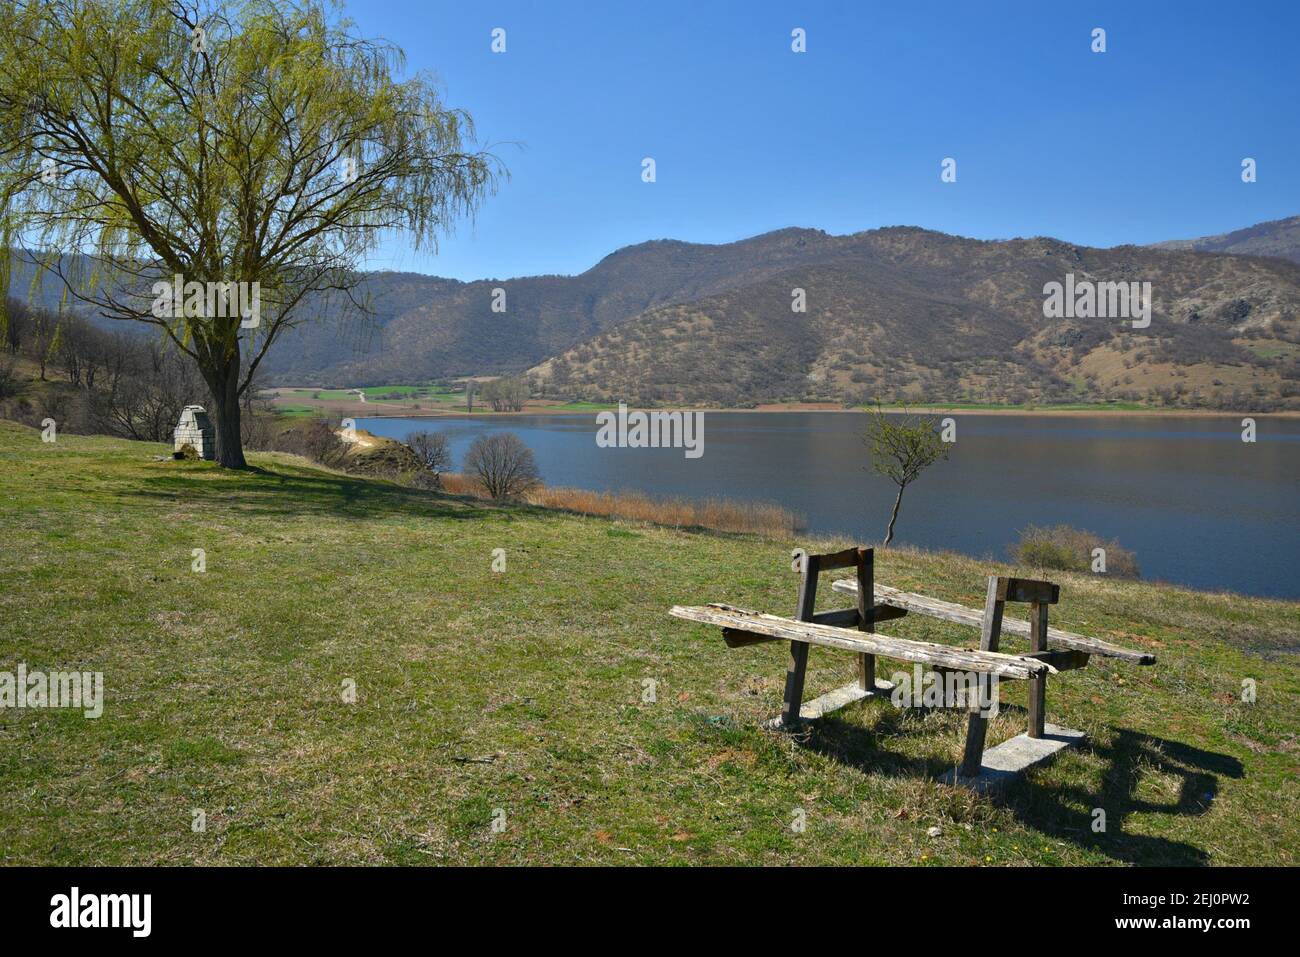 Landschaft mit Panoramablick auf einen hölzernen Picknicktisch am Ufer des Sees Vegoritida, dem natürlichen See von Florina in Westmakedonien Griechenland. Stockfoto